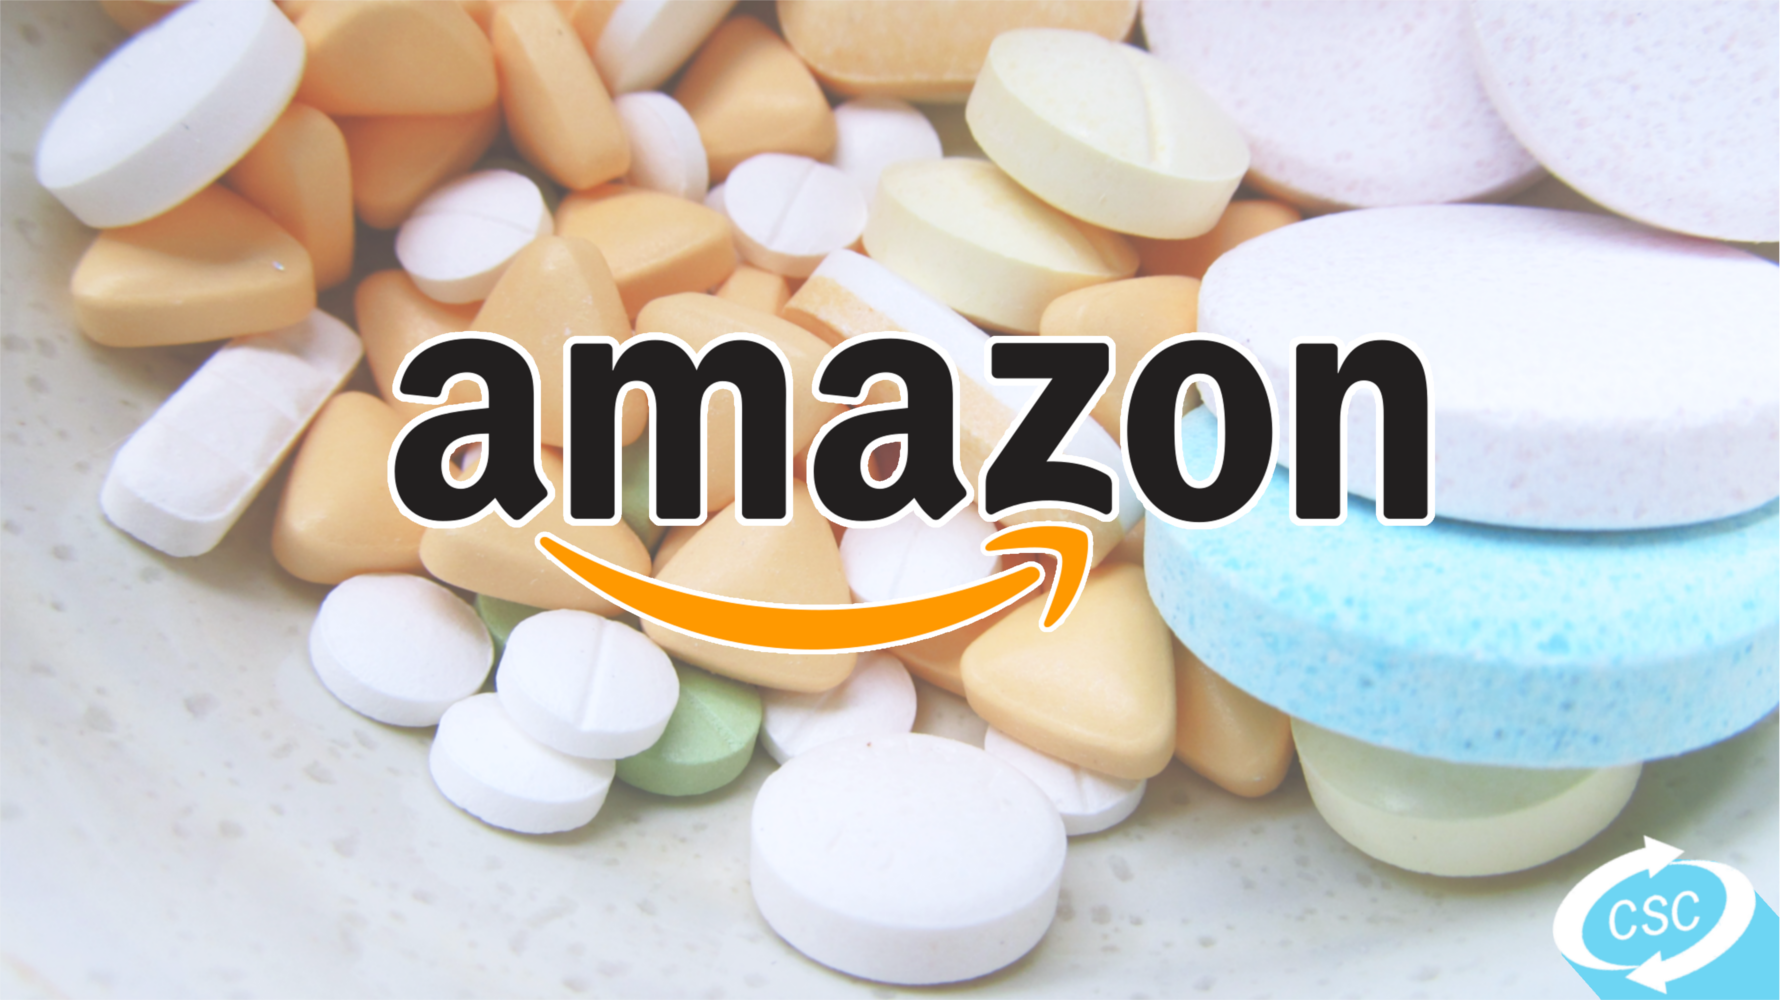 Amazon entra nel settore farmaceutico